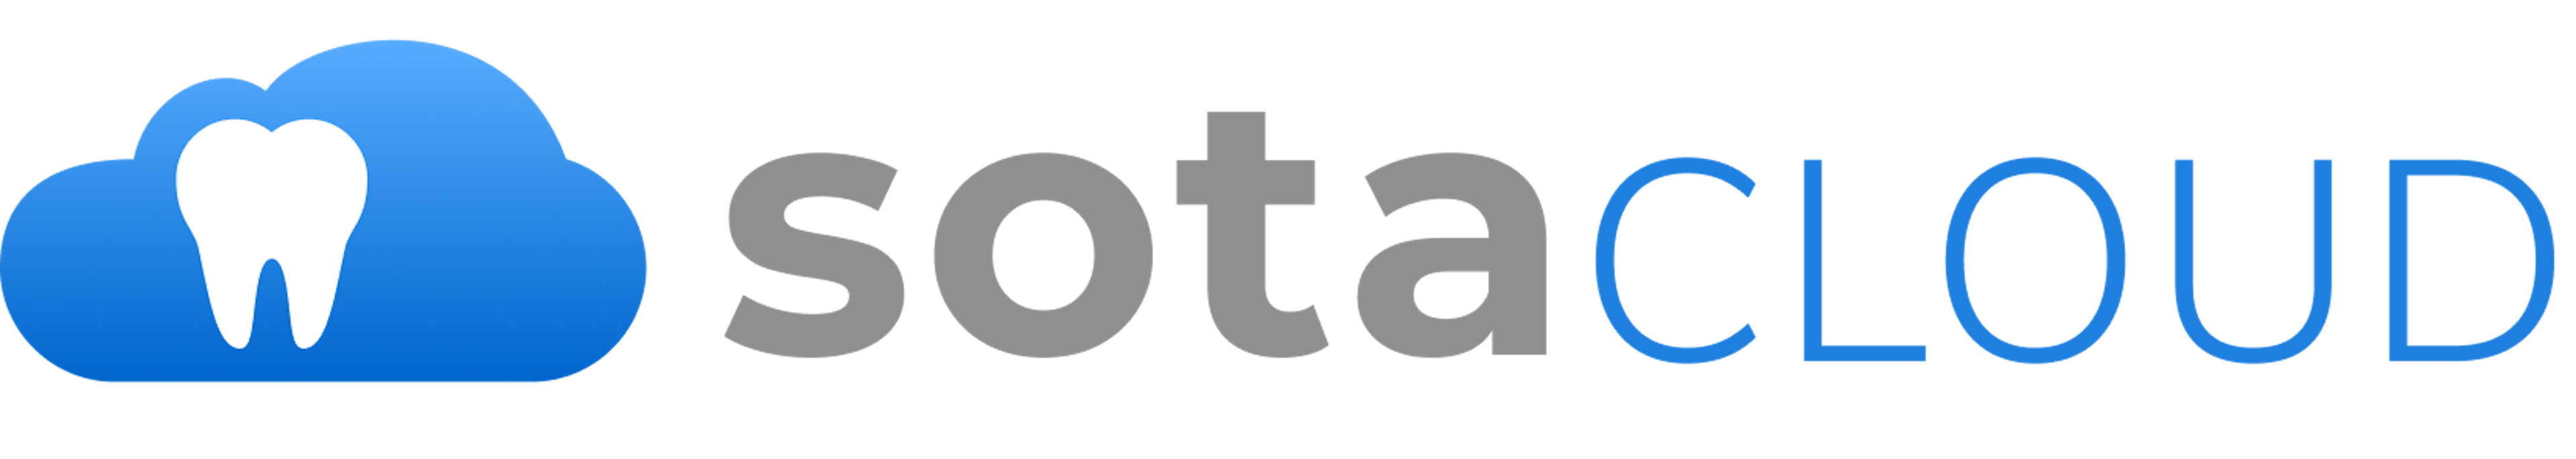 SOTA Cloud Logo